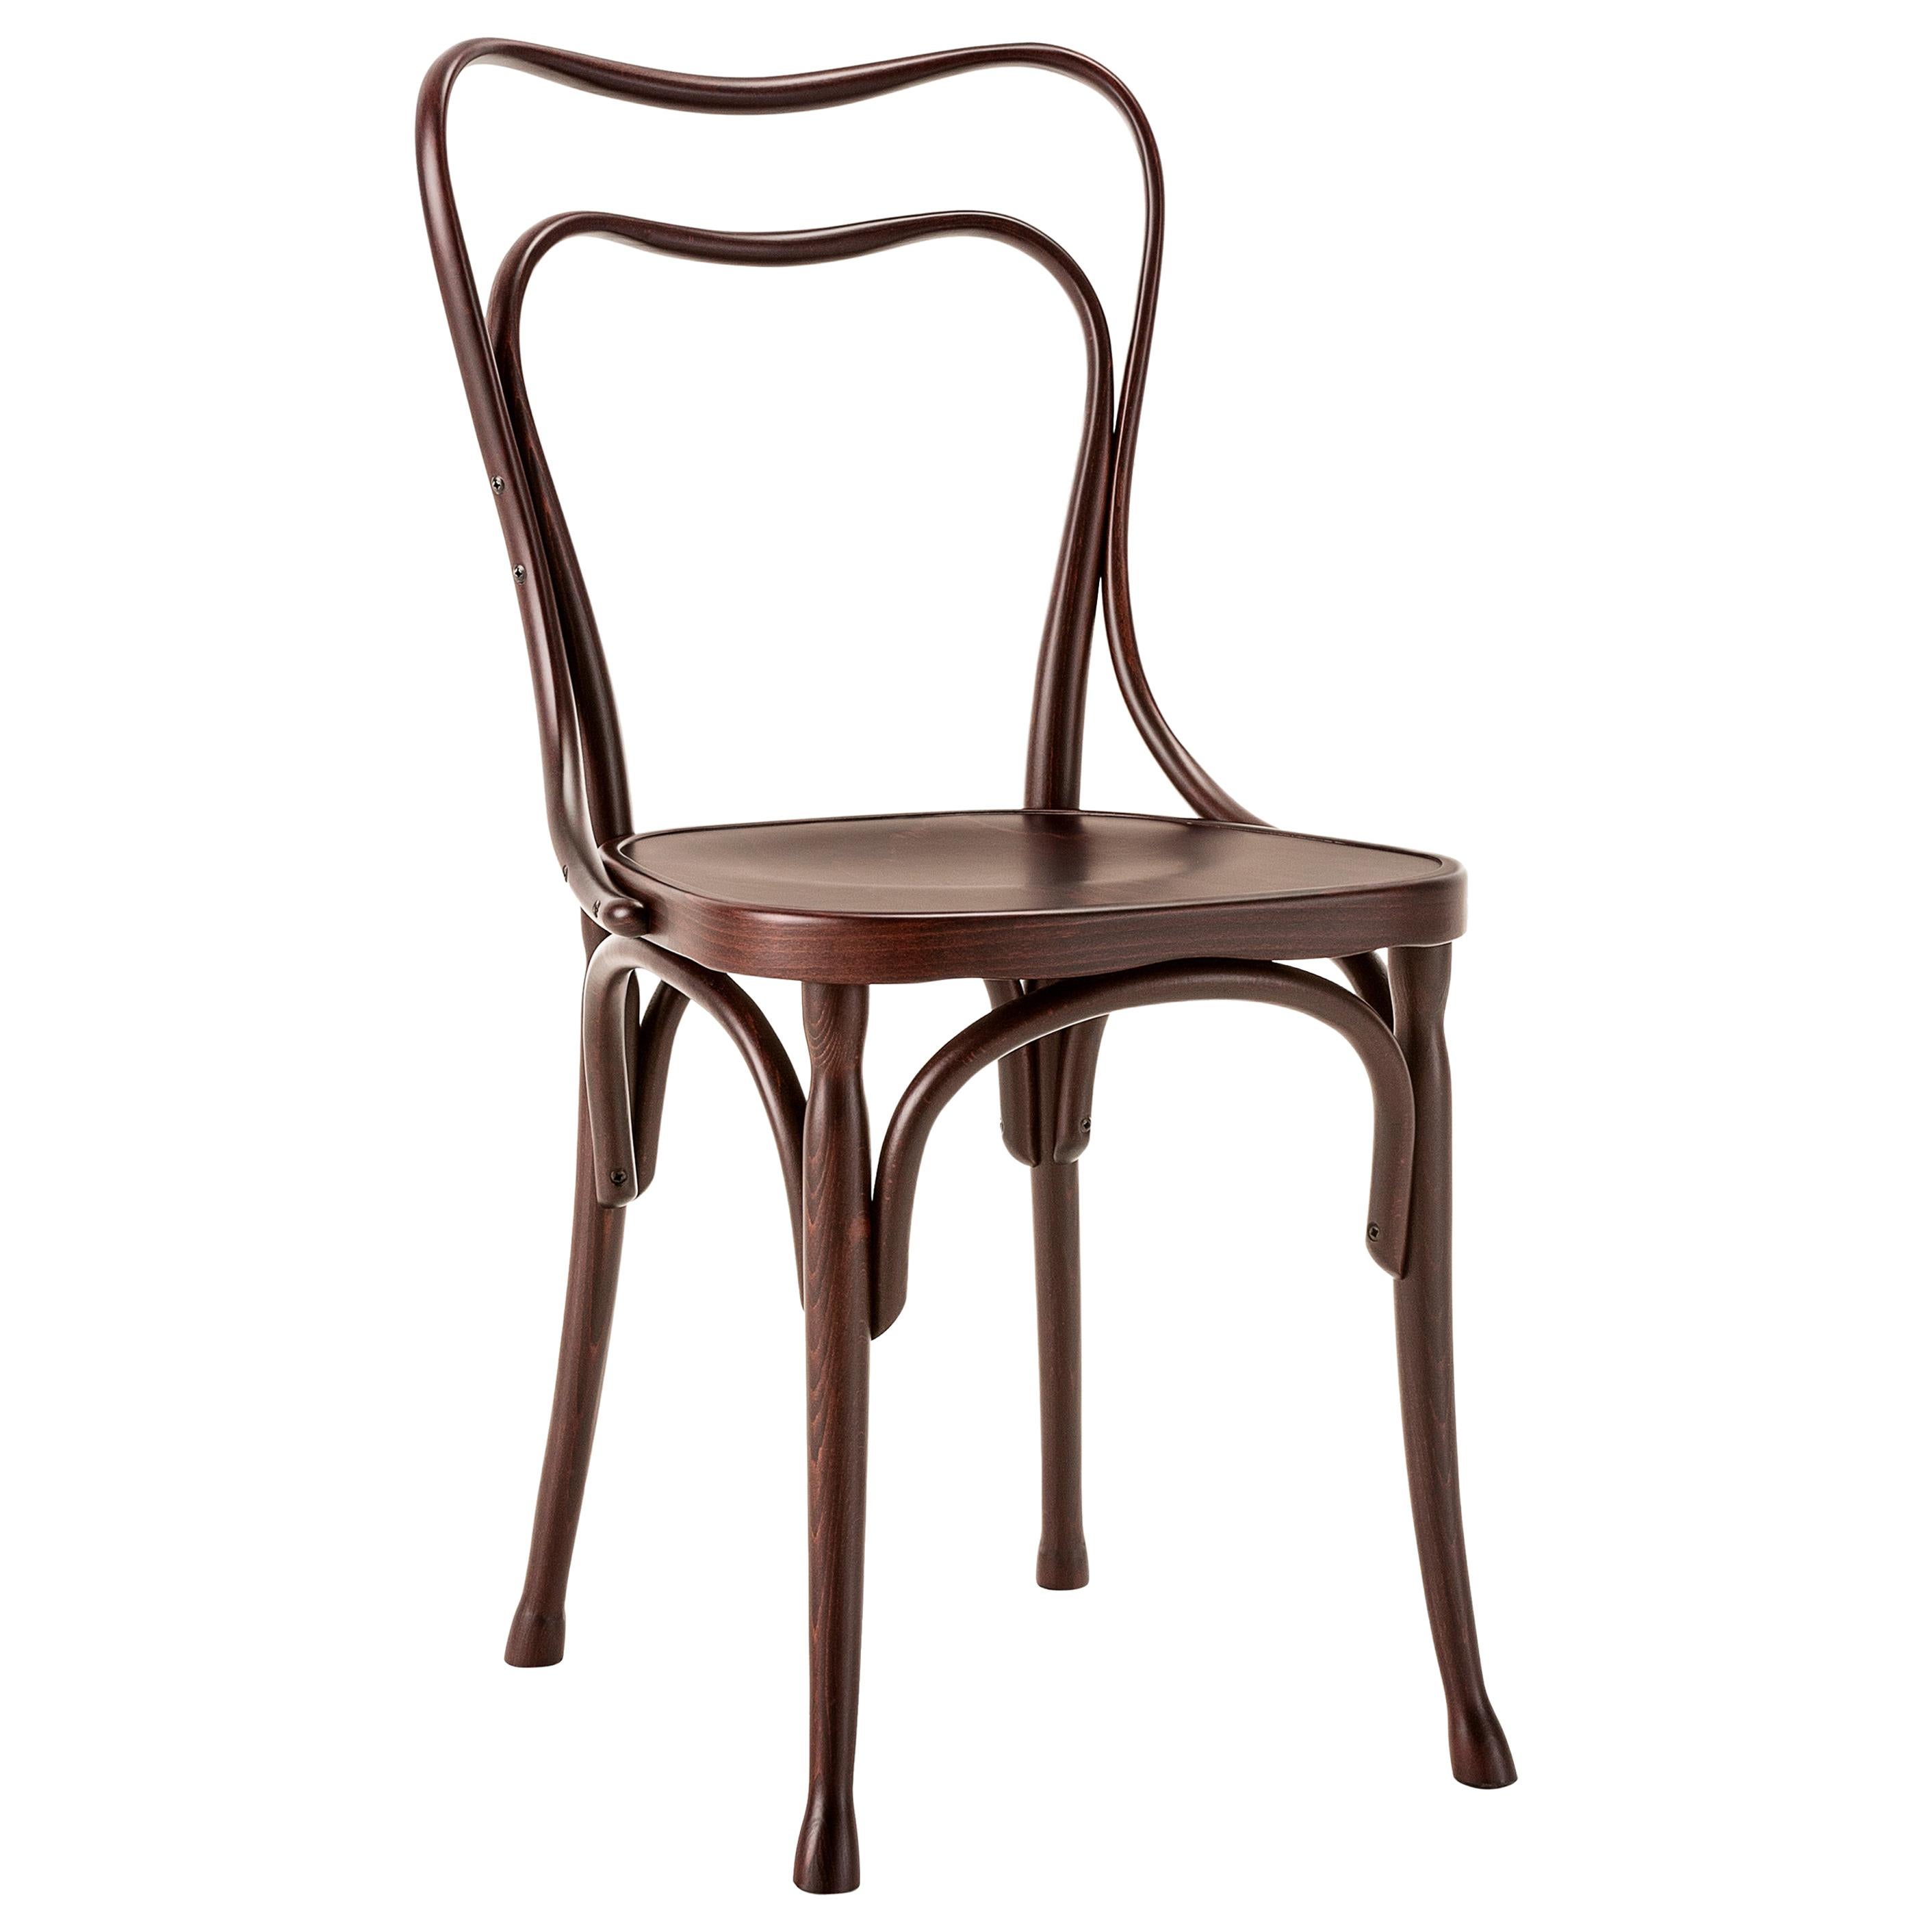 Gebrüder Thonet Vienna GmbH Loos Cafe Museum Chair in Dark Walnut For Sale